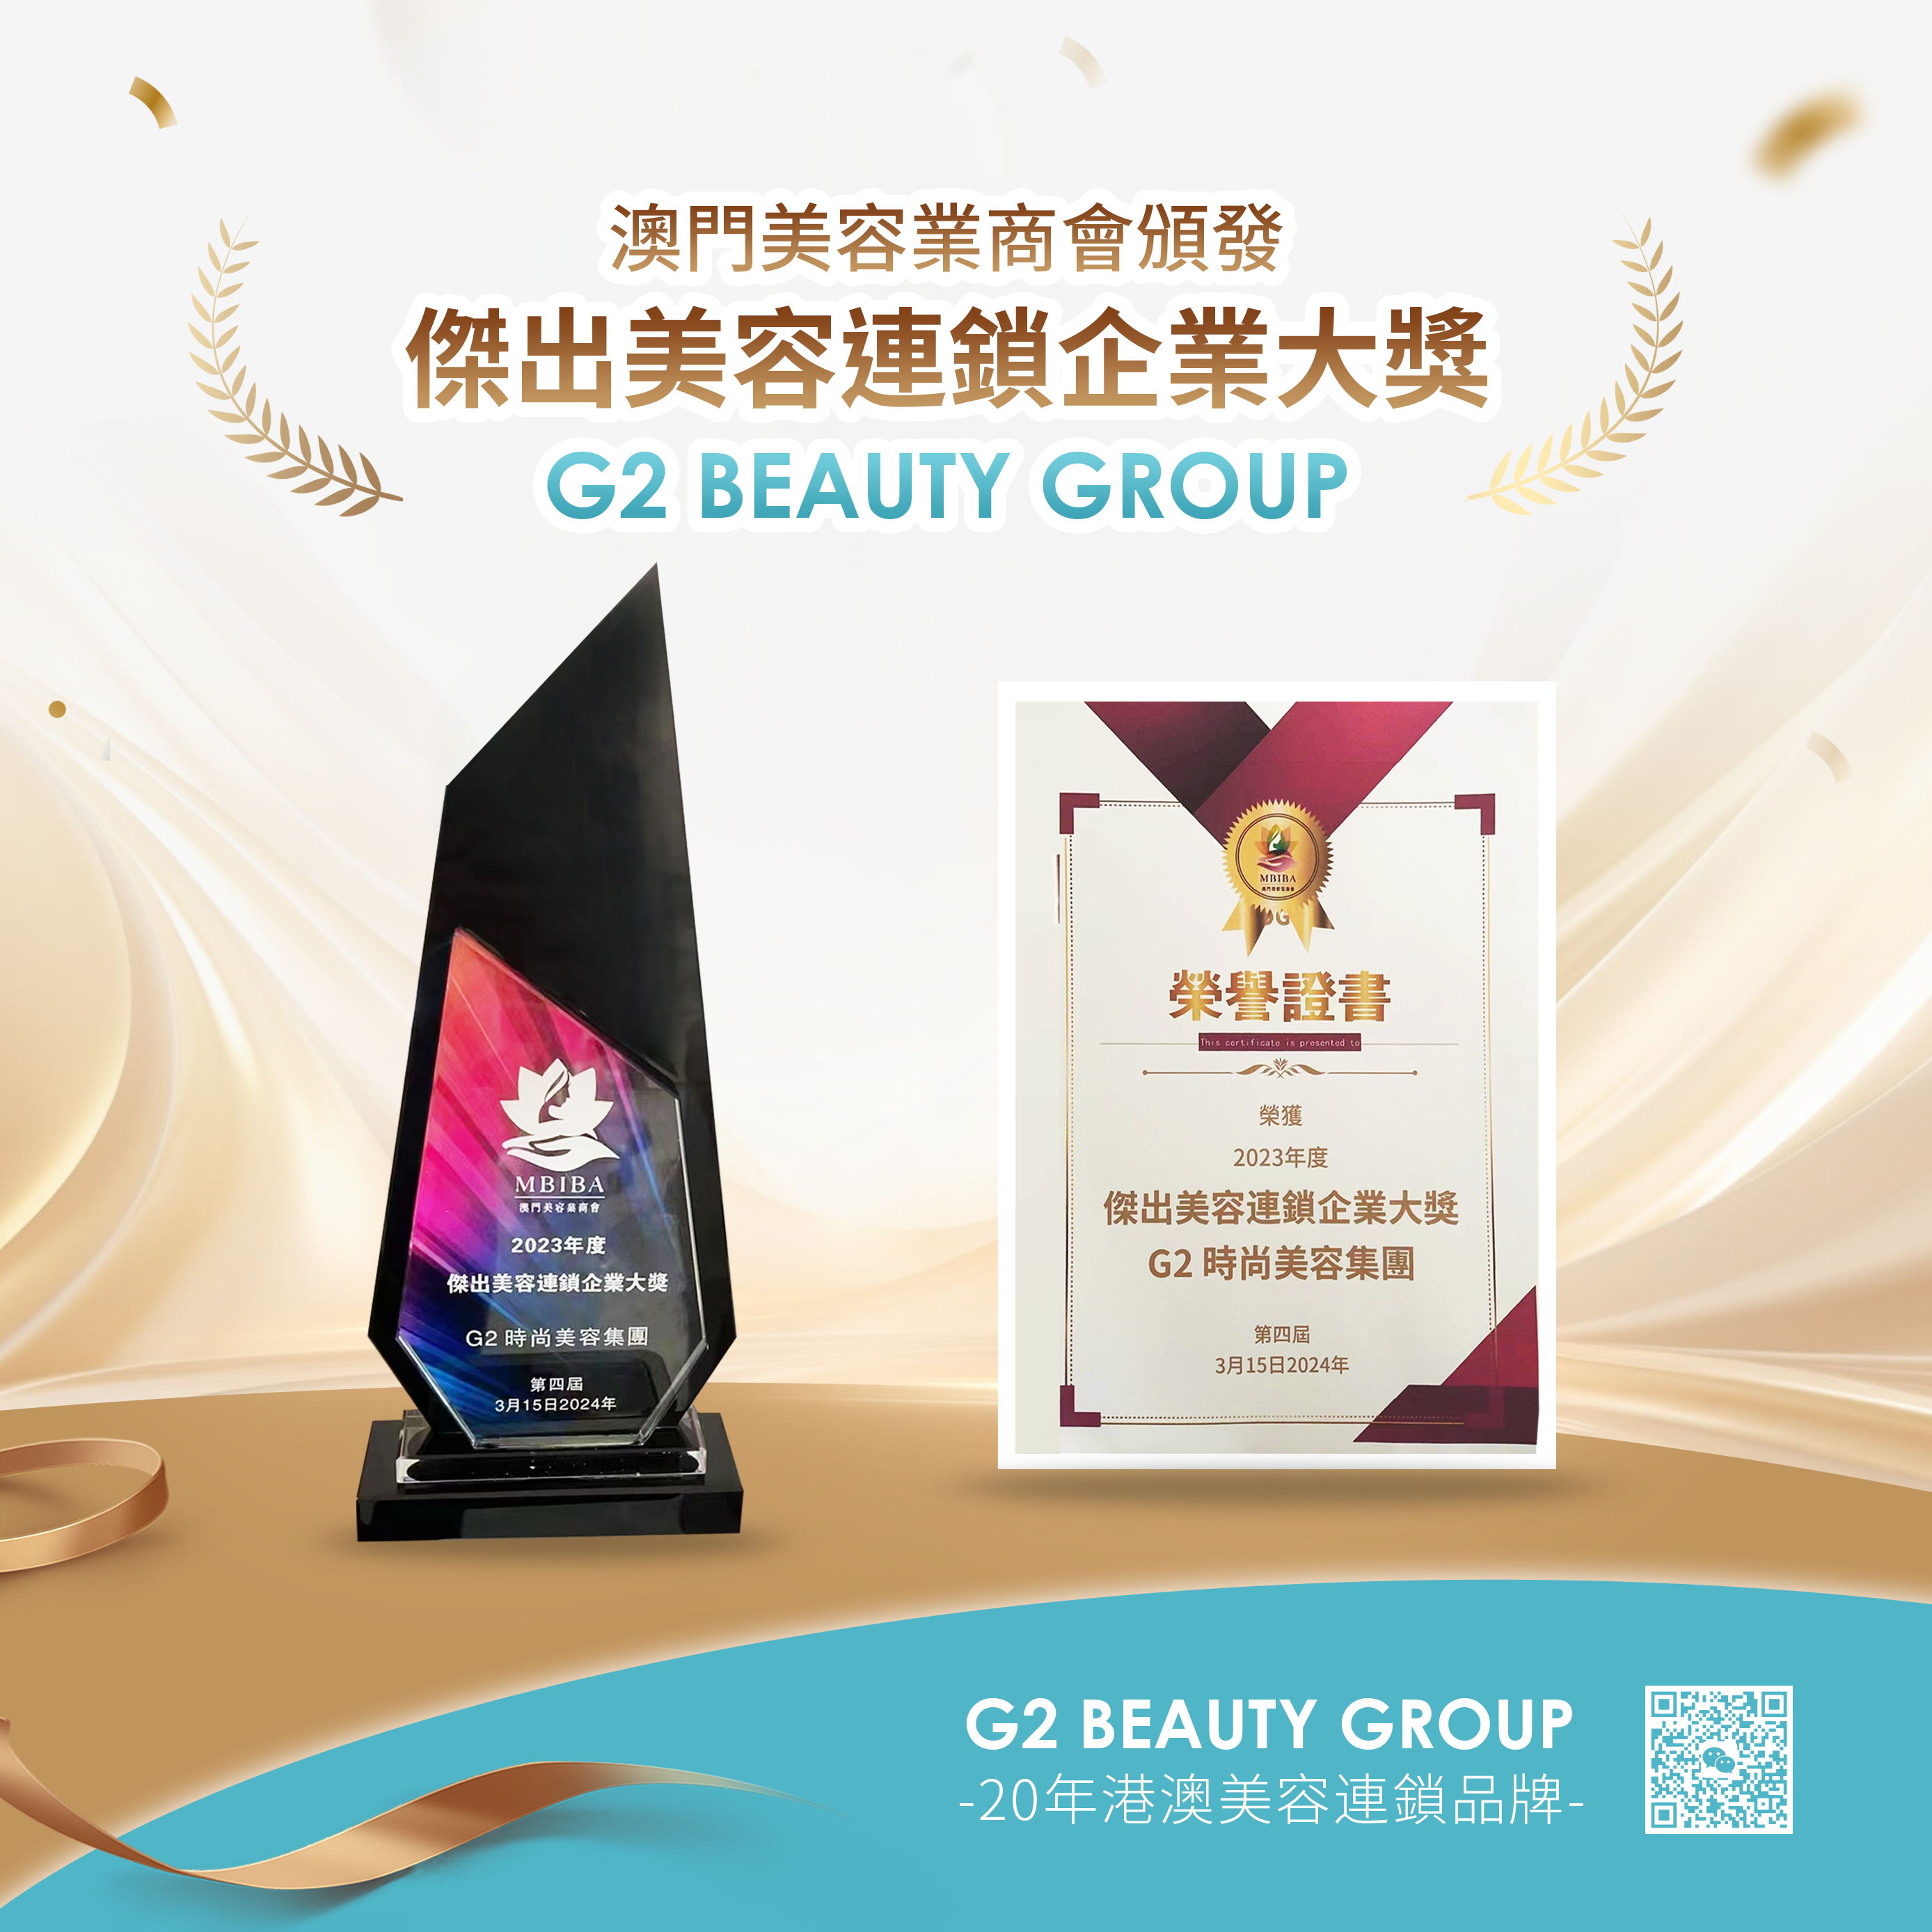 祝贺 G2 Beauty 荣获2023年度『杰出美容连锁企业大奖』